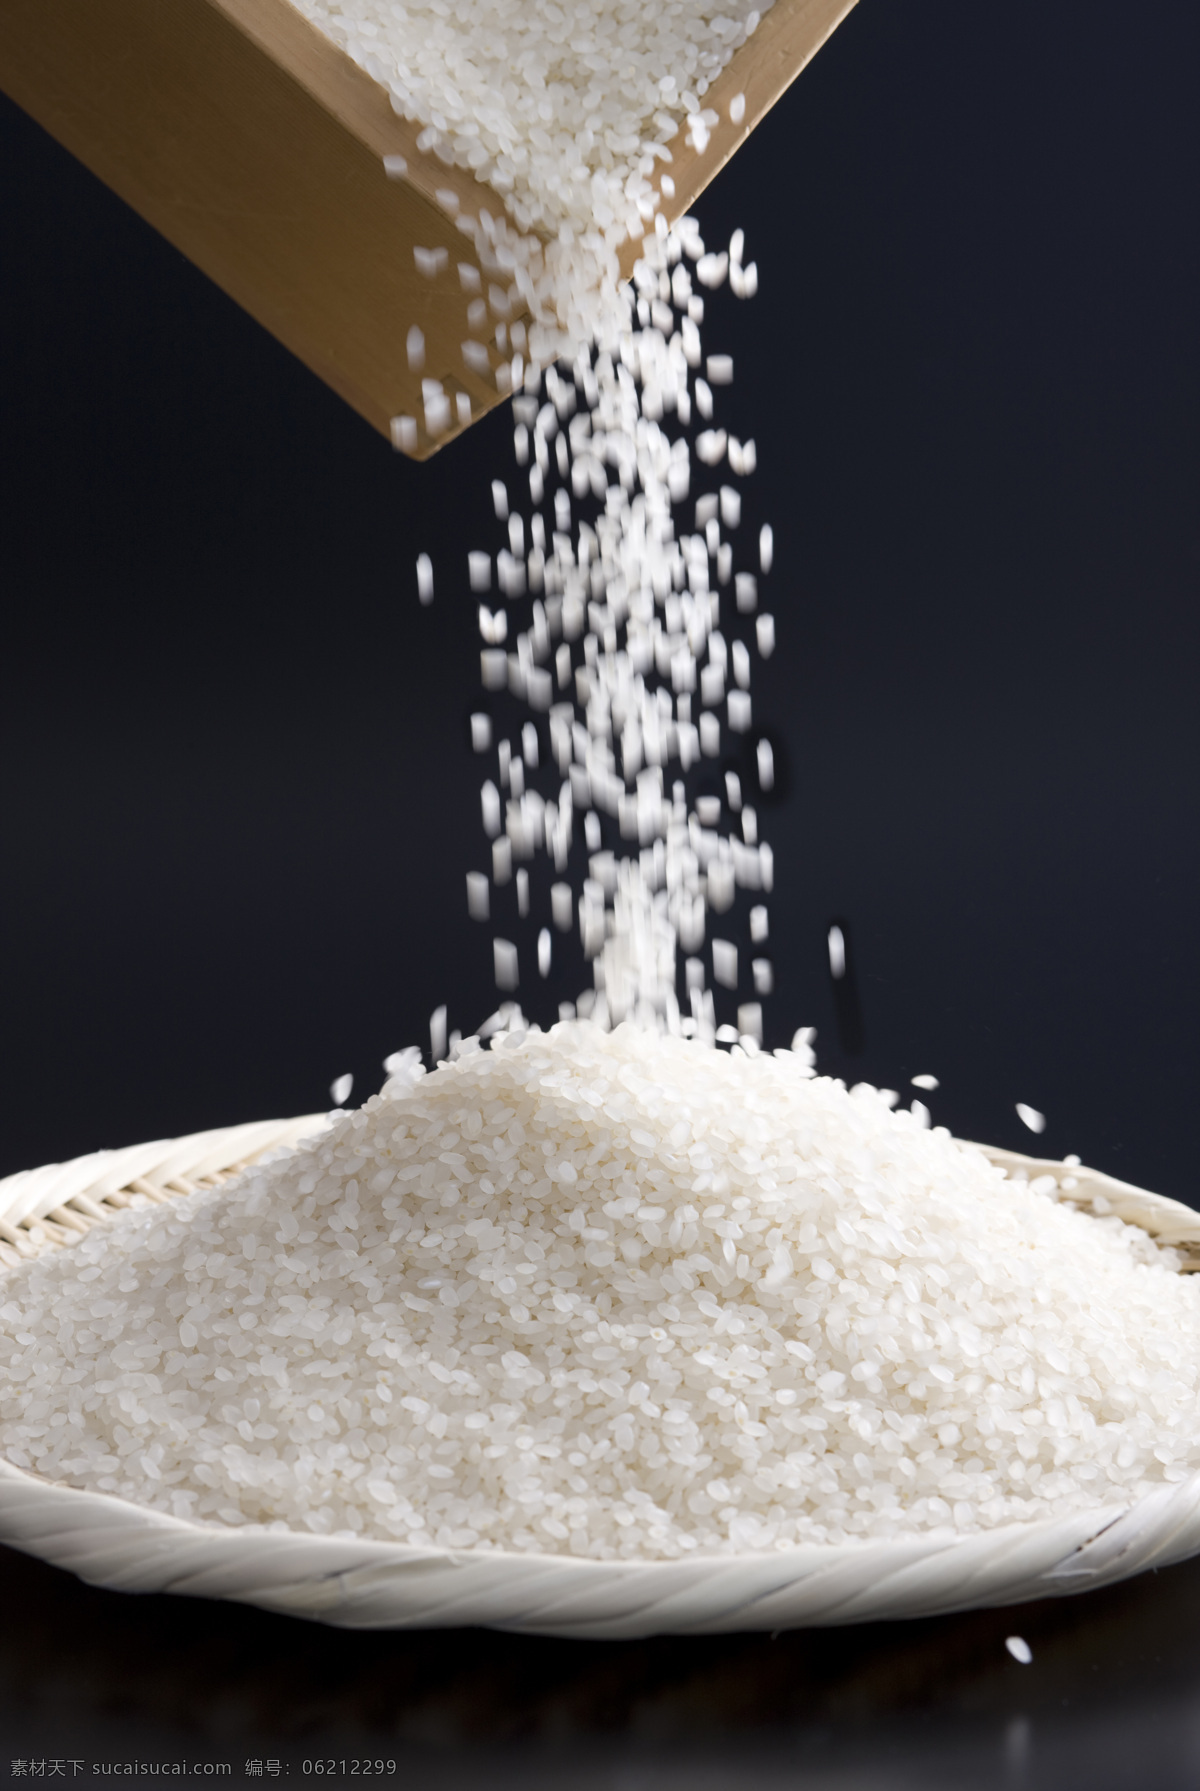 大米 东北大米 长粒香 珍珠米 粳米 粮食 稻谷 谷物 五谷杂粮 糯米 食物原料 餐饮美食